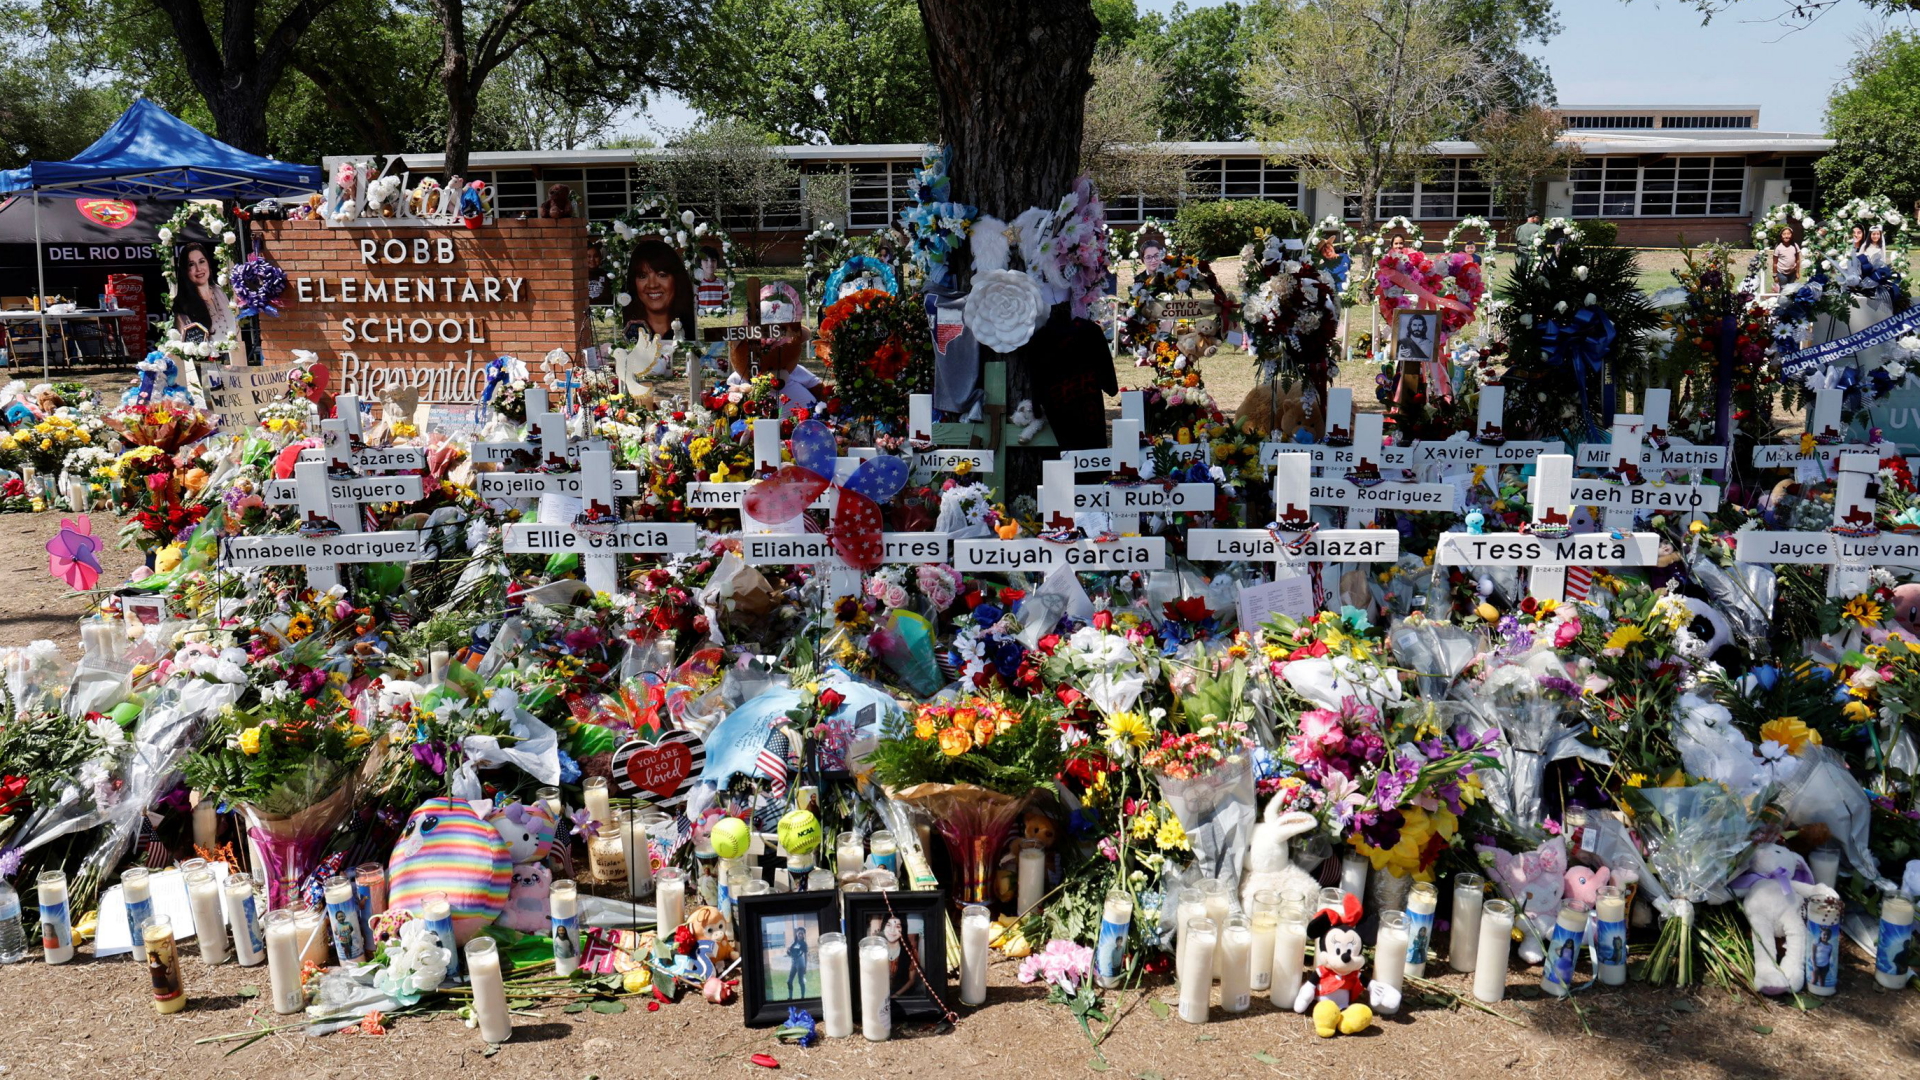 Weiße Holzkreuze vor denen Blumen niedergelegt wurden erinnern an die Toten des Schulmassakers von Uvalde. | REUTERS